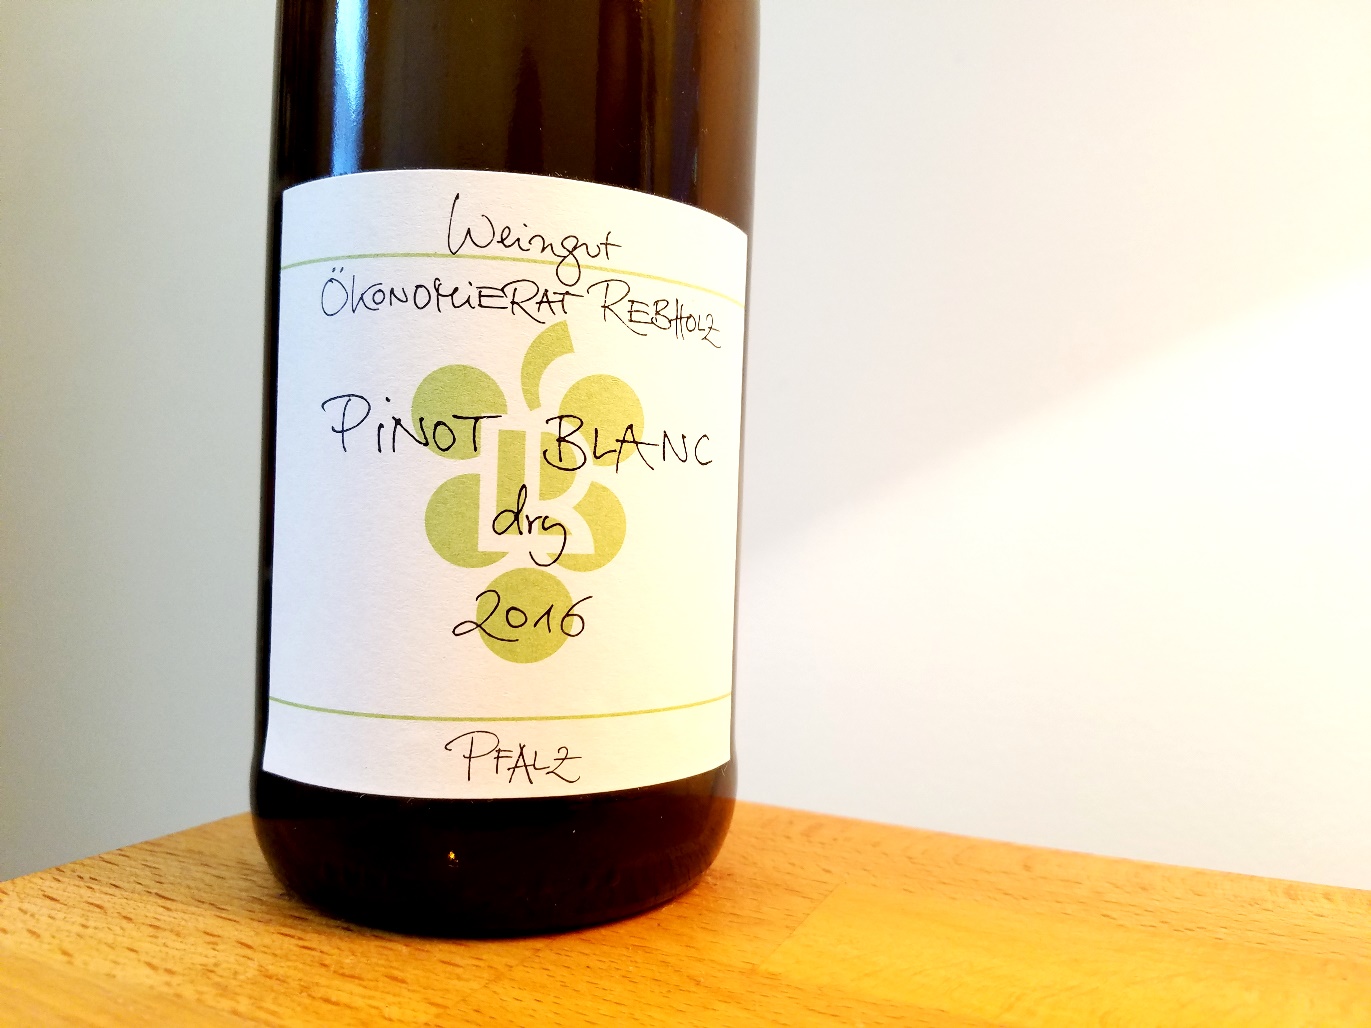 Weingut Ökonomierat Rebholz, Pinot Blanc Dry 2016, Pfalz, Germany, Wine Casual